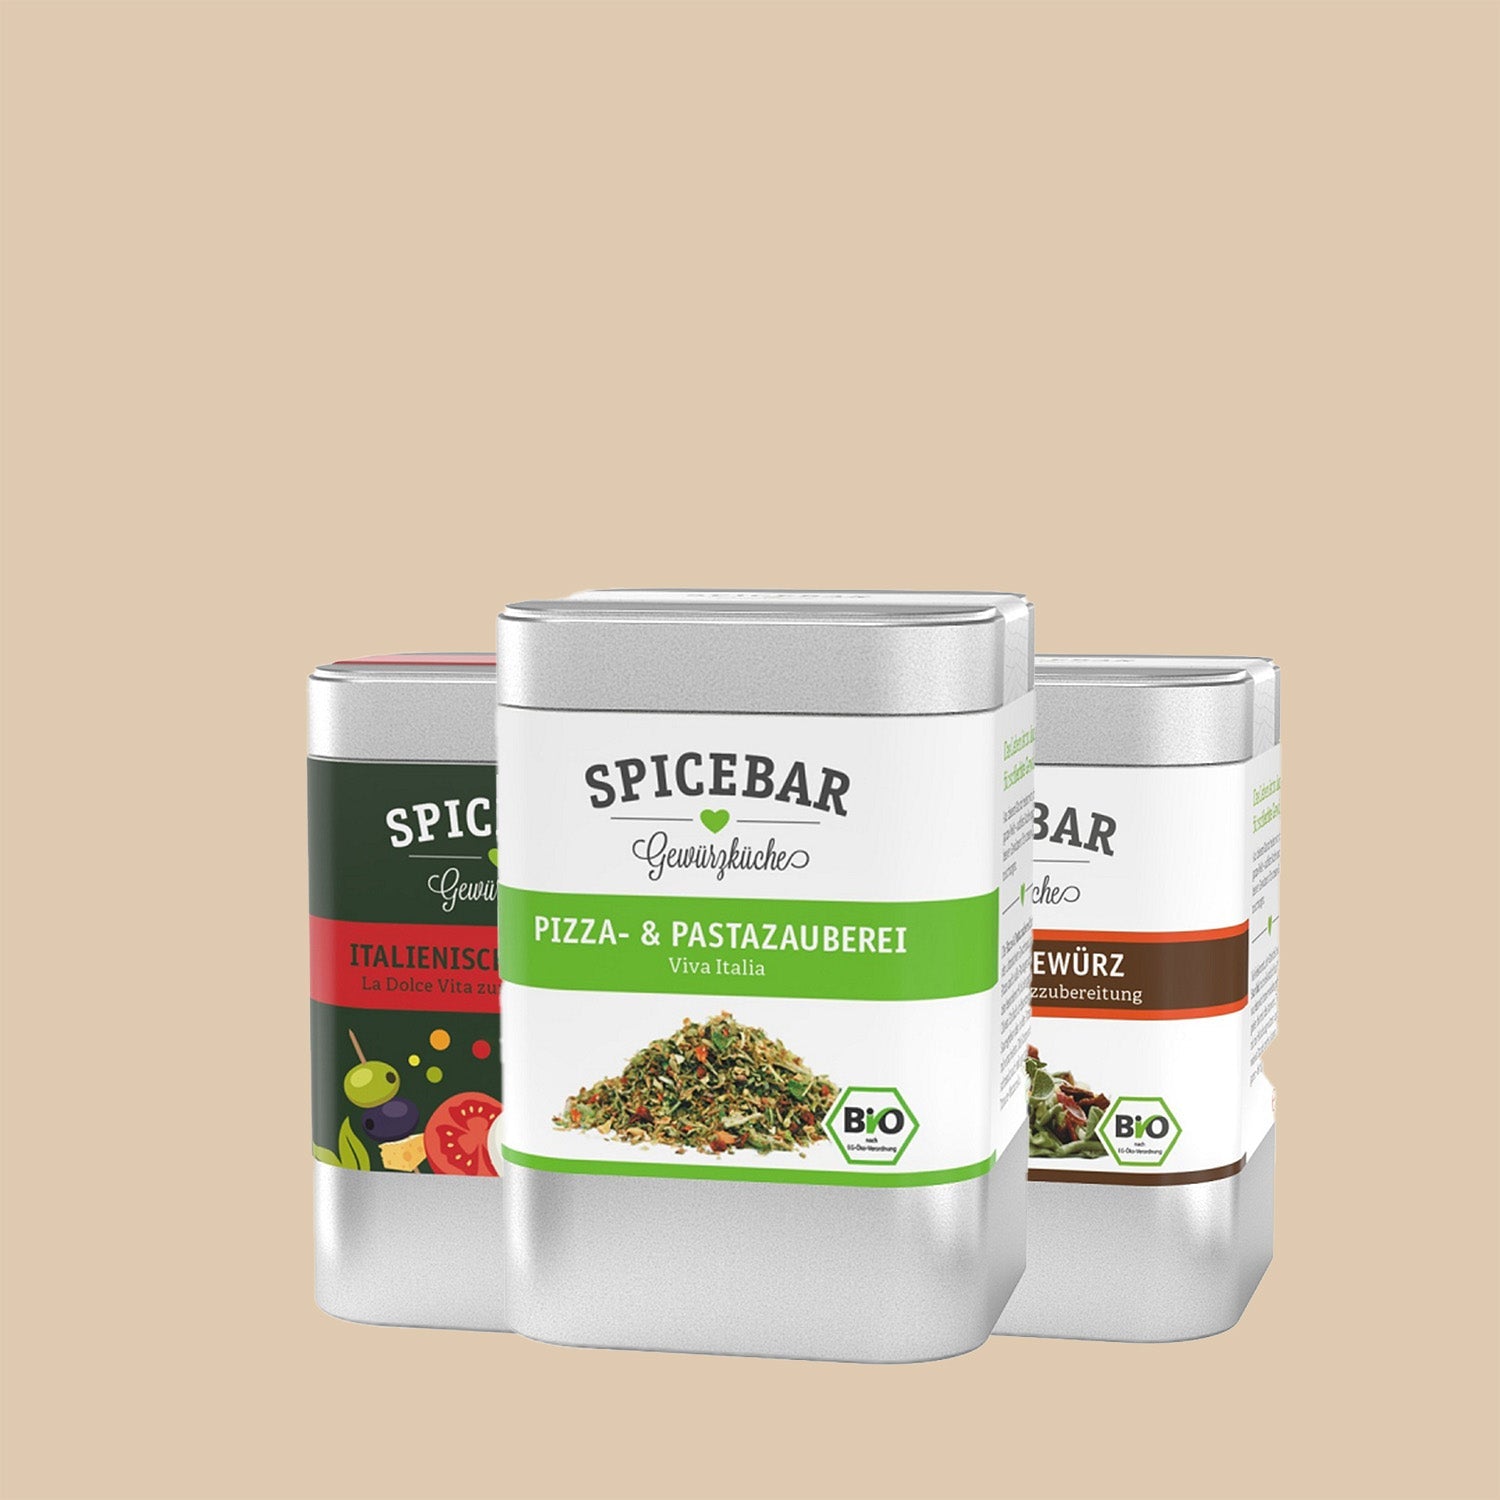 Spicebar - OEL - Griechische Produkte und Olivenöl